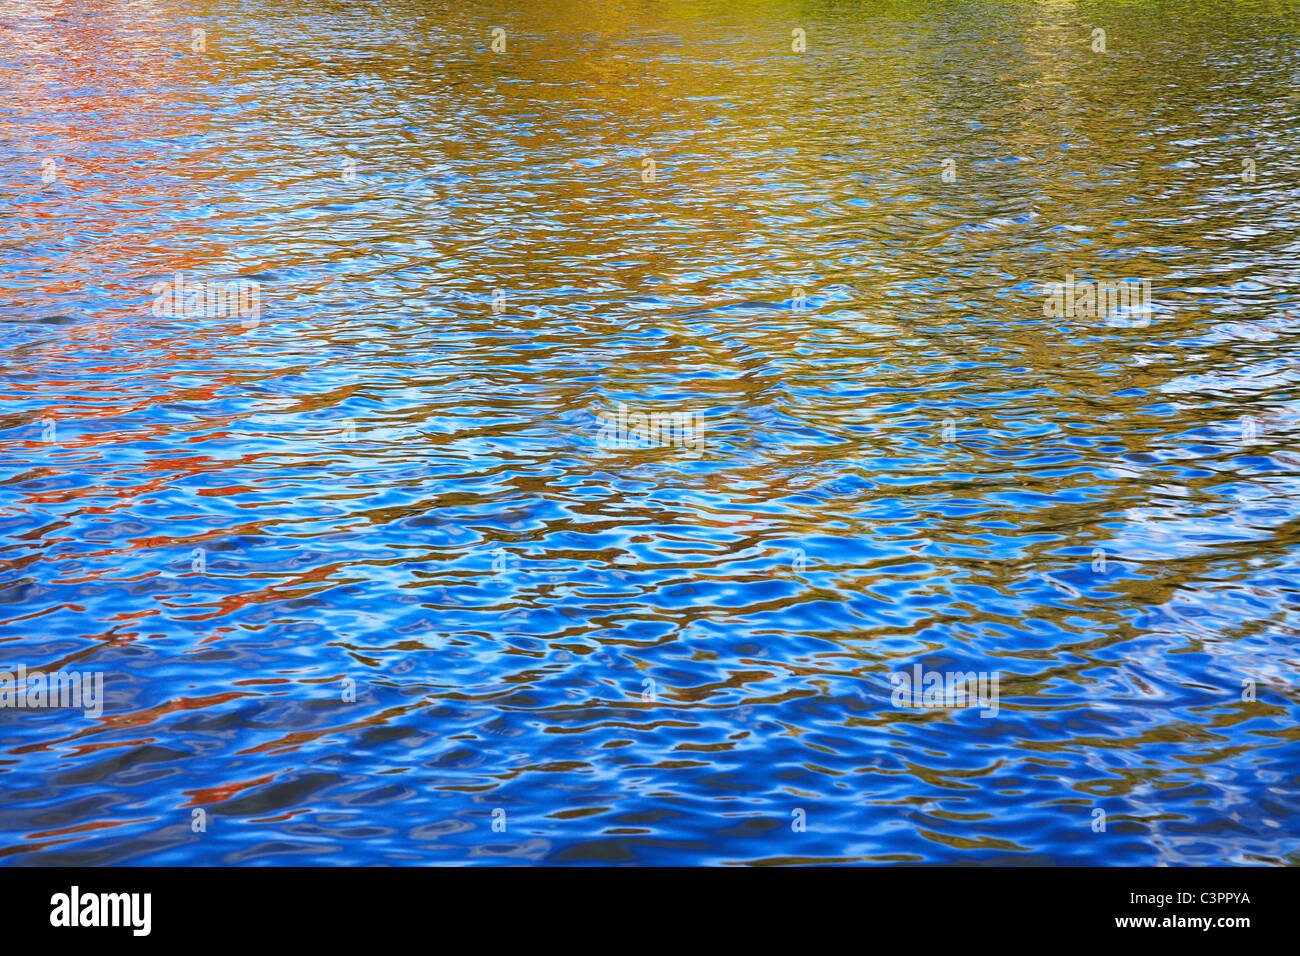 Die Oberfläche eines kleinen Sees spiegelt die leuchtenden Farben der umgebenden Herbstlaub und der tiefblaue Himmel Stockfoto